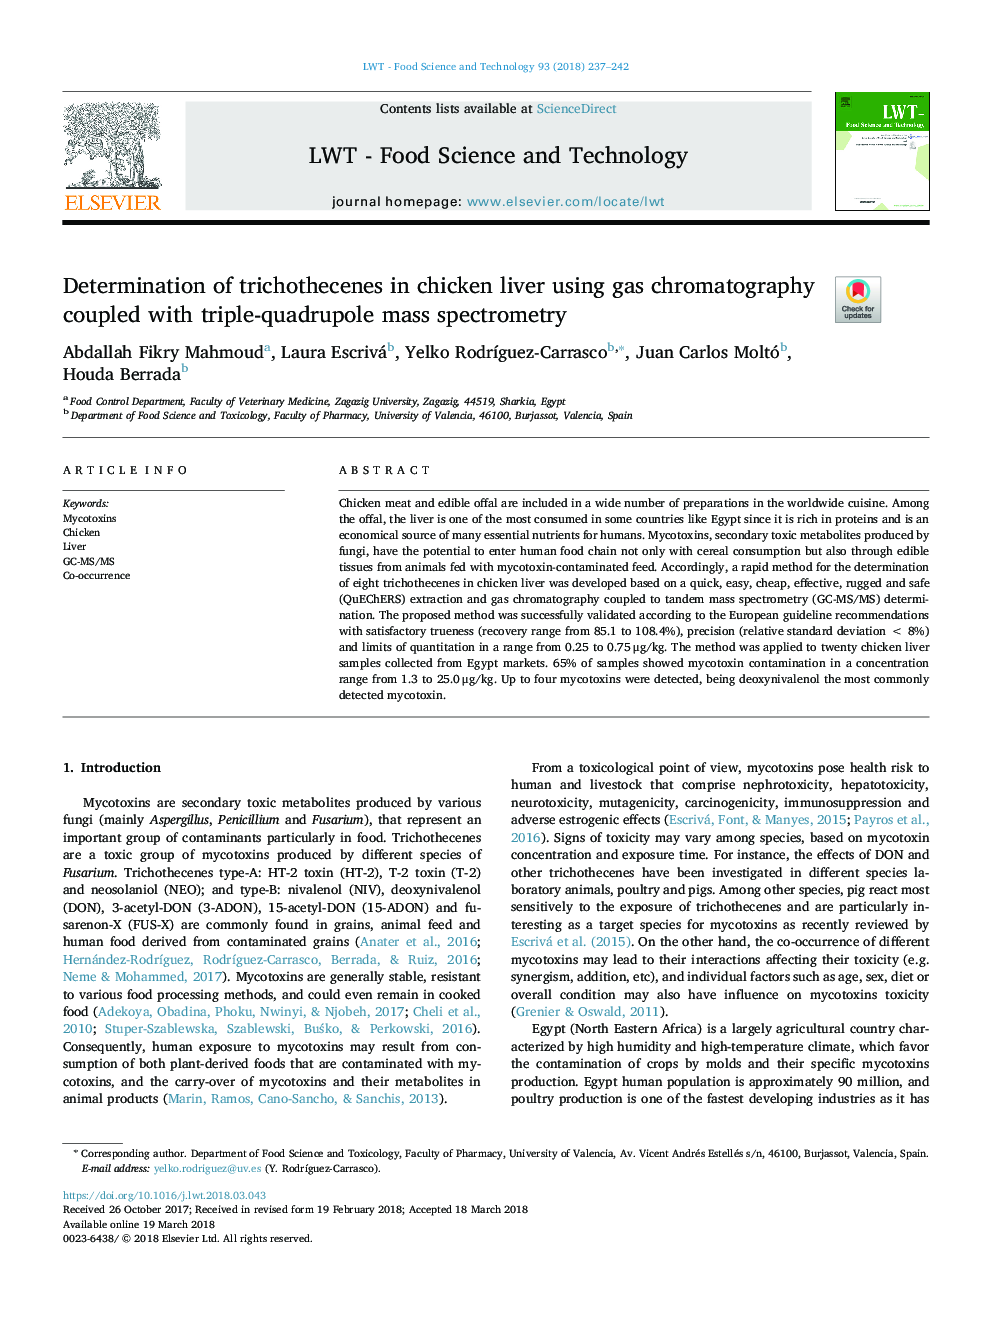 تعیین ترشوتنسین ها در کبد مرغ با استفاده از کروماتوگرافی گازی و طیف سنجی جرمی سه 